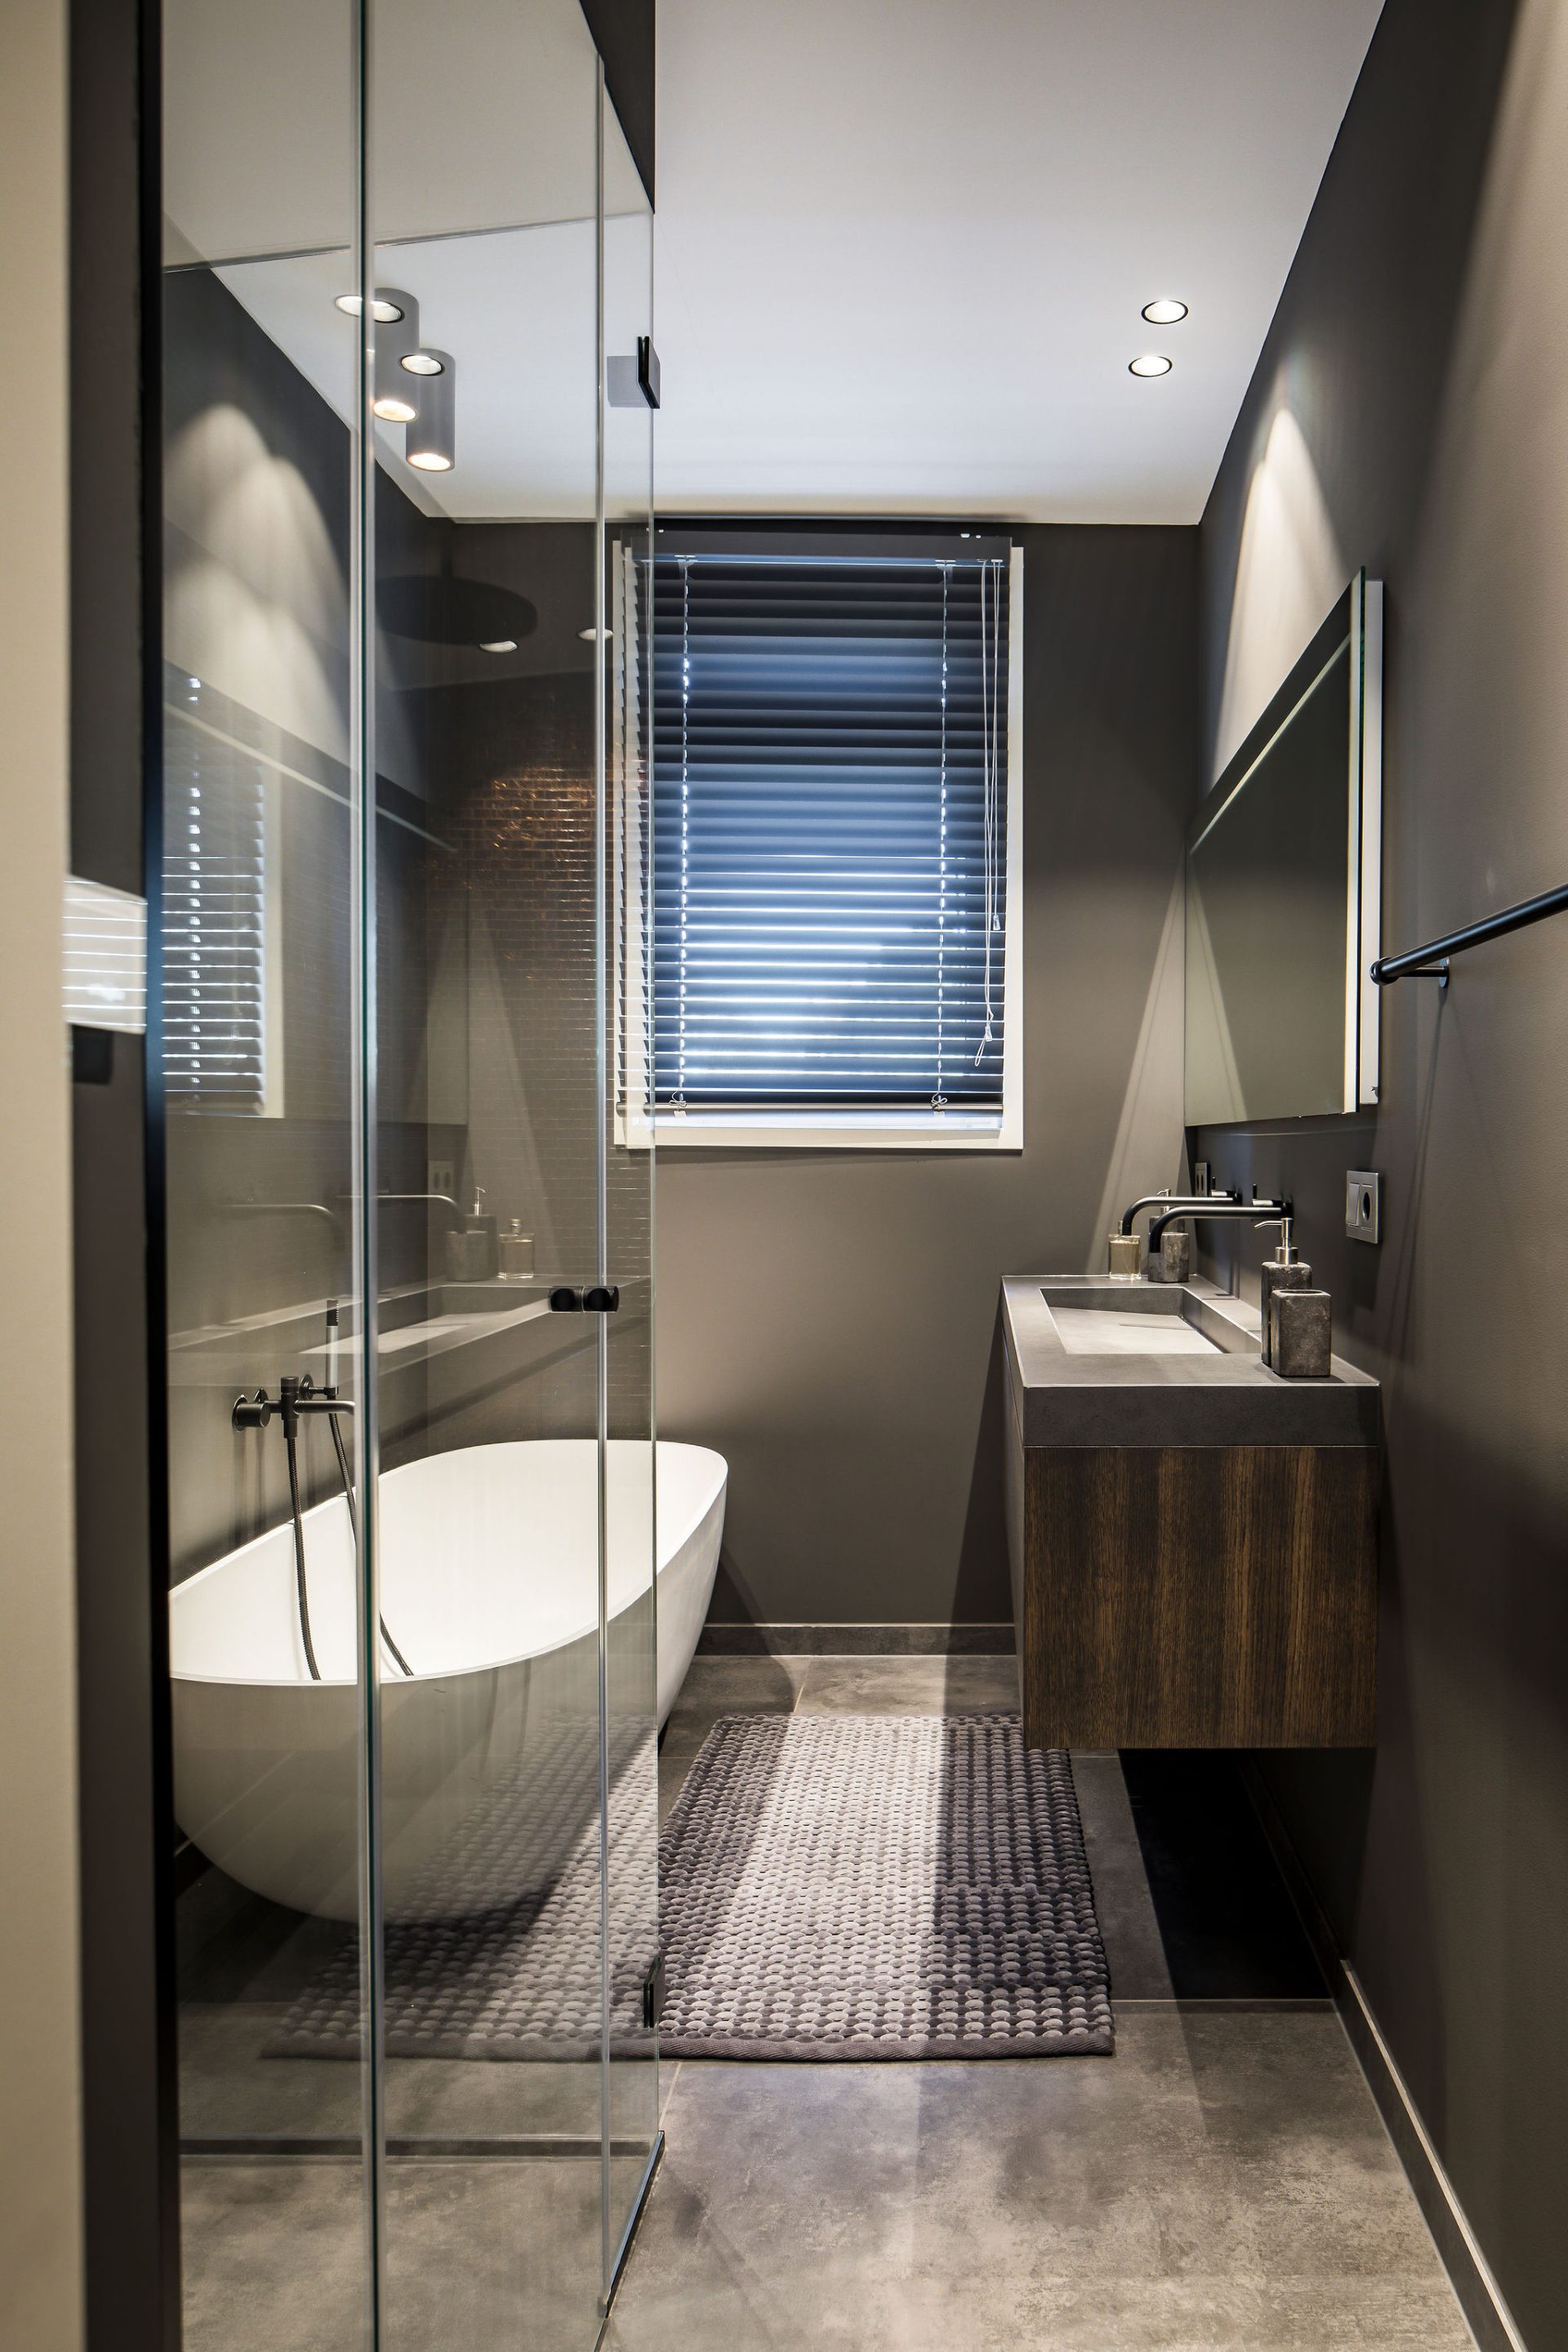 badkamer met grijze wanden, beton look vloer, wit vrijstaand bad, zwevende wastafel van hout en beton look blad.